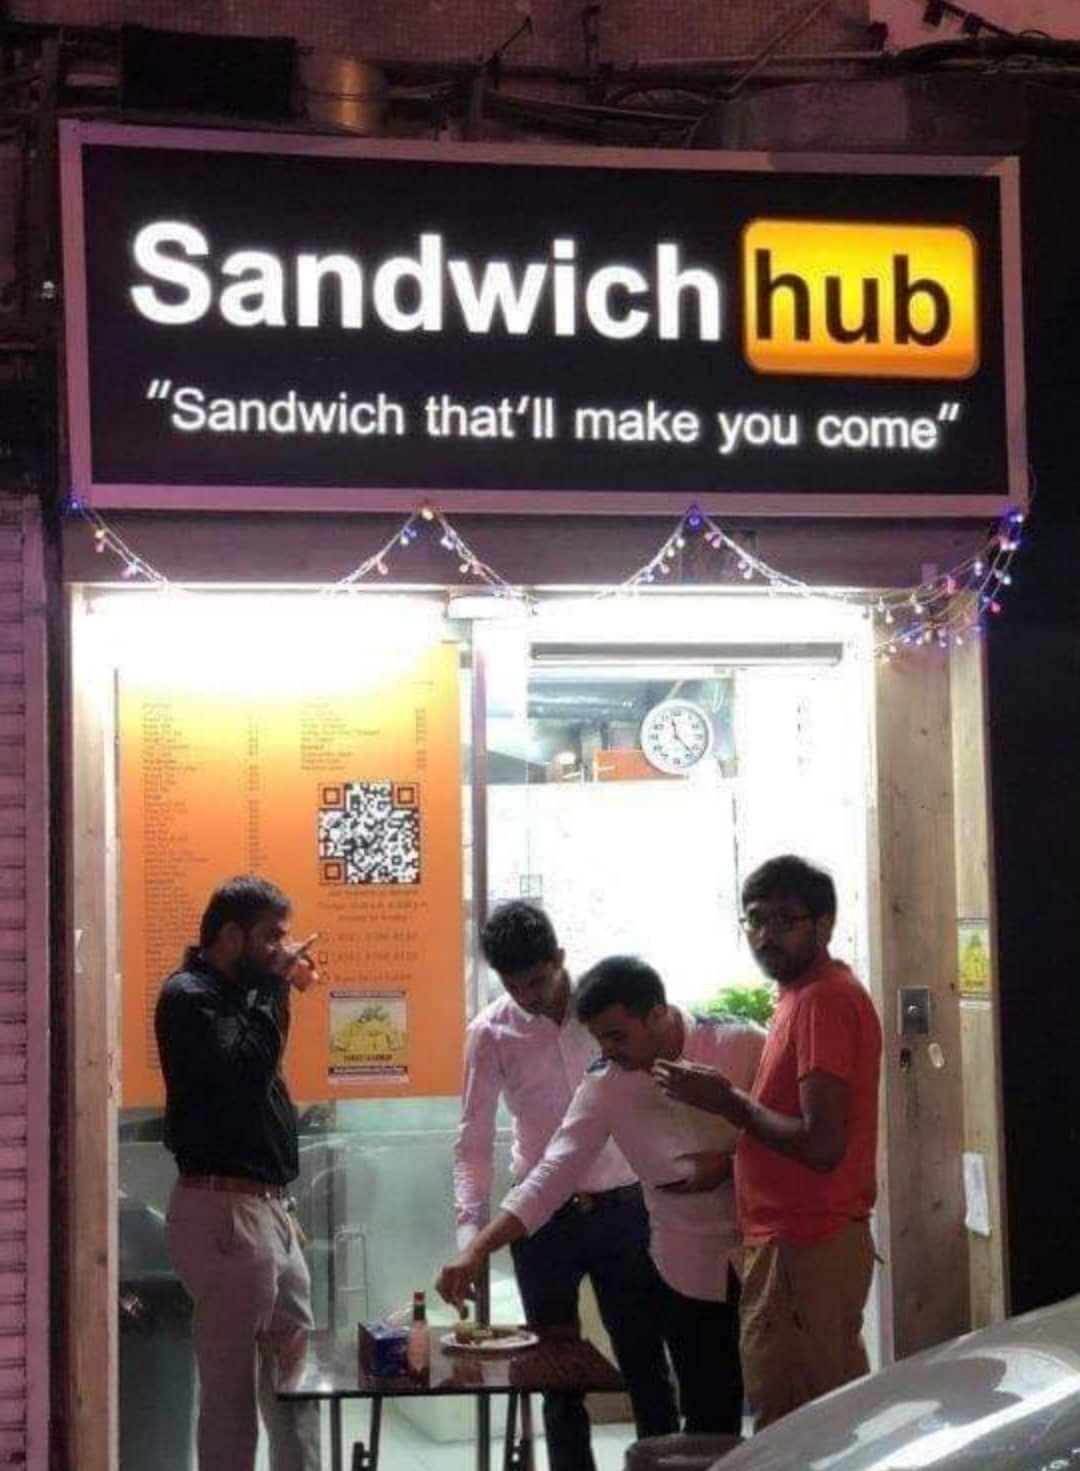 sandwich hub meme - Sandwich hub "Sandwich that'll make you come"